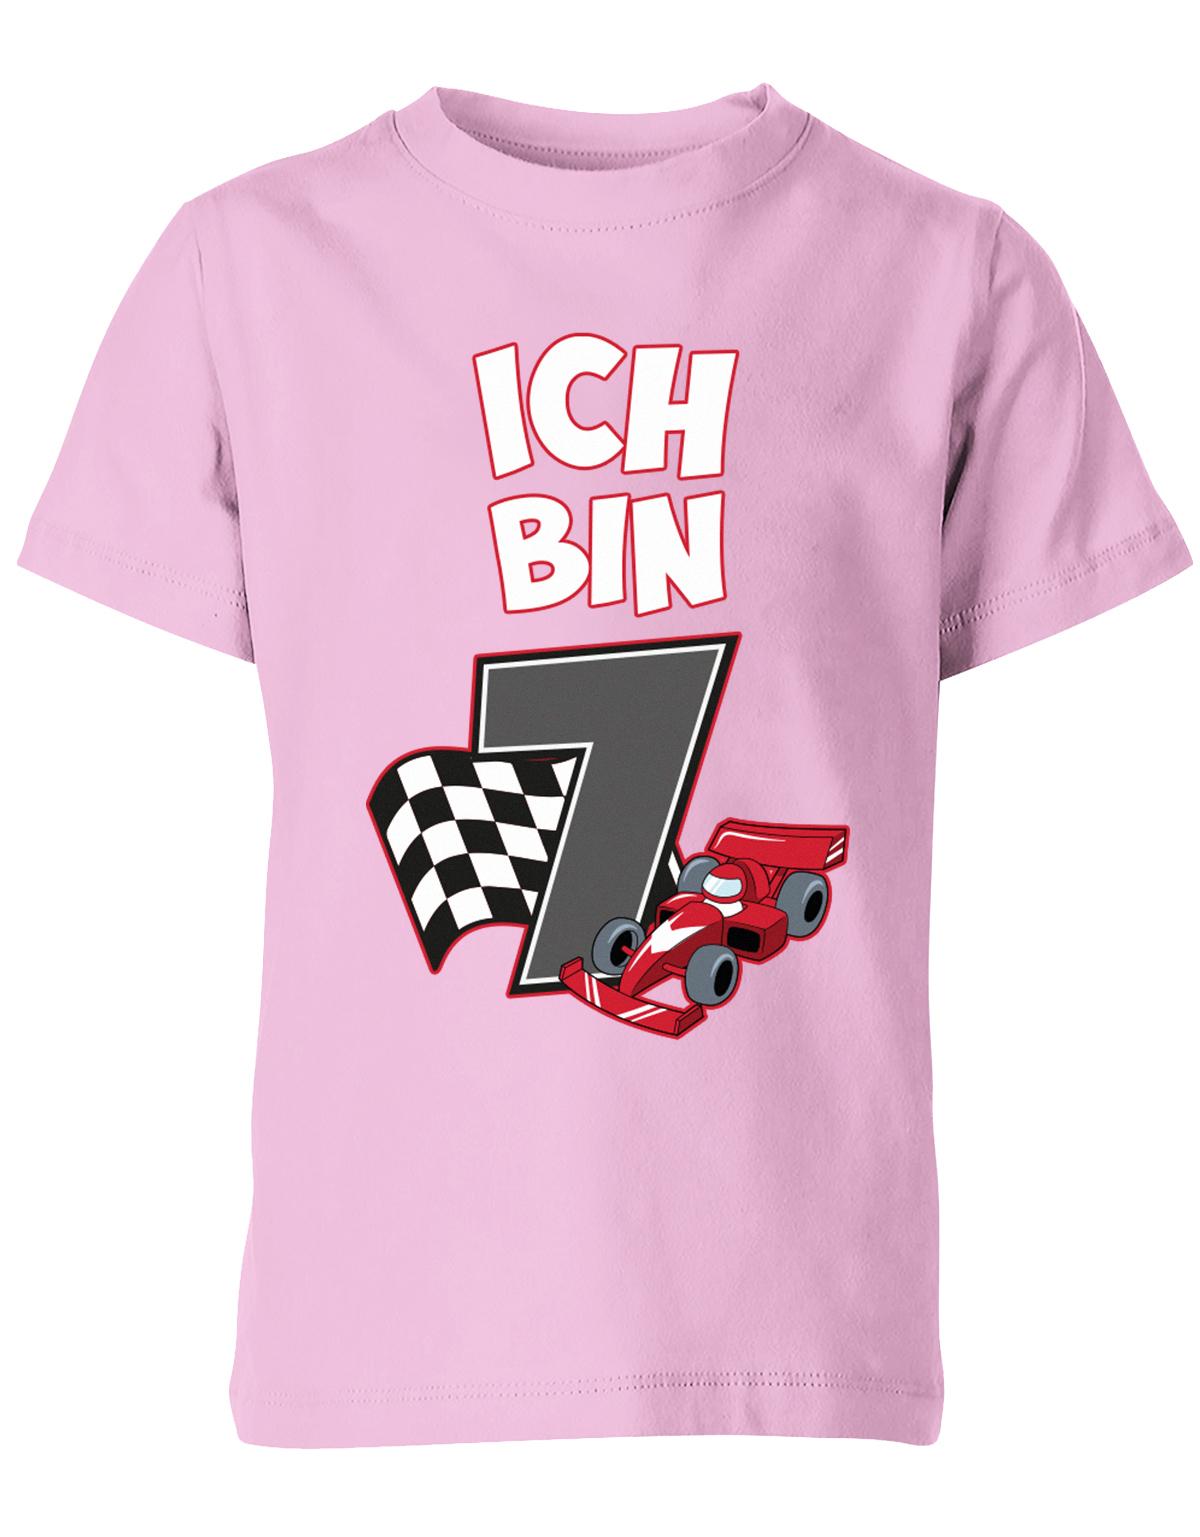 ich-bin-7-autorennen-rennwagen-geburtstag-rennfahrer-kinder-shirt-rosa